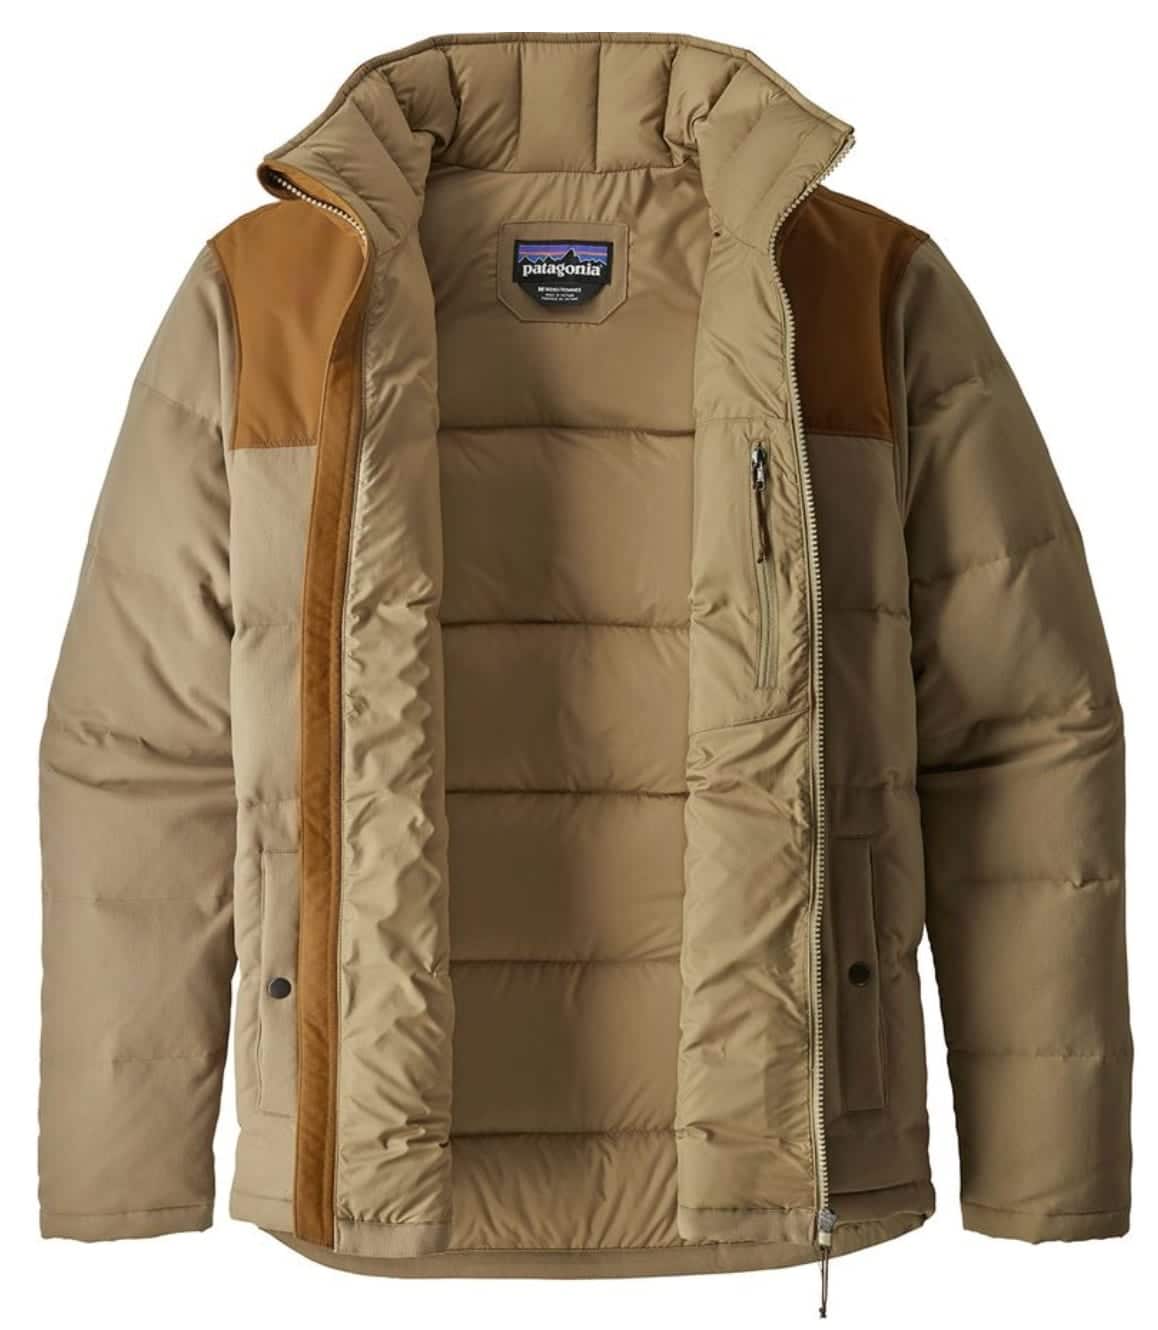 Men's Patagonia Jacket